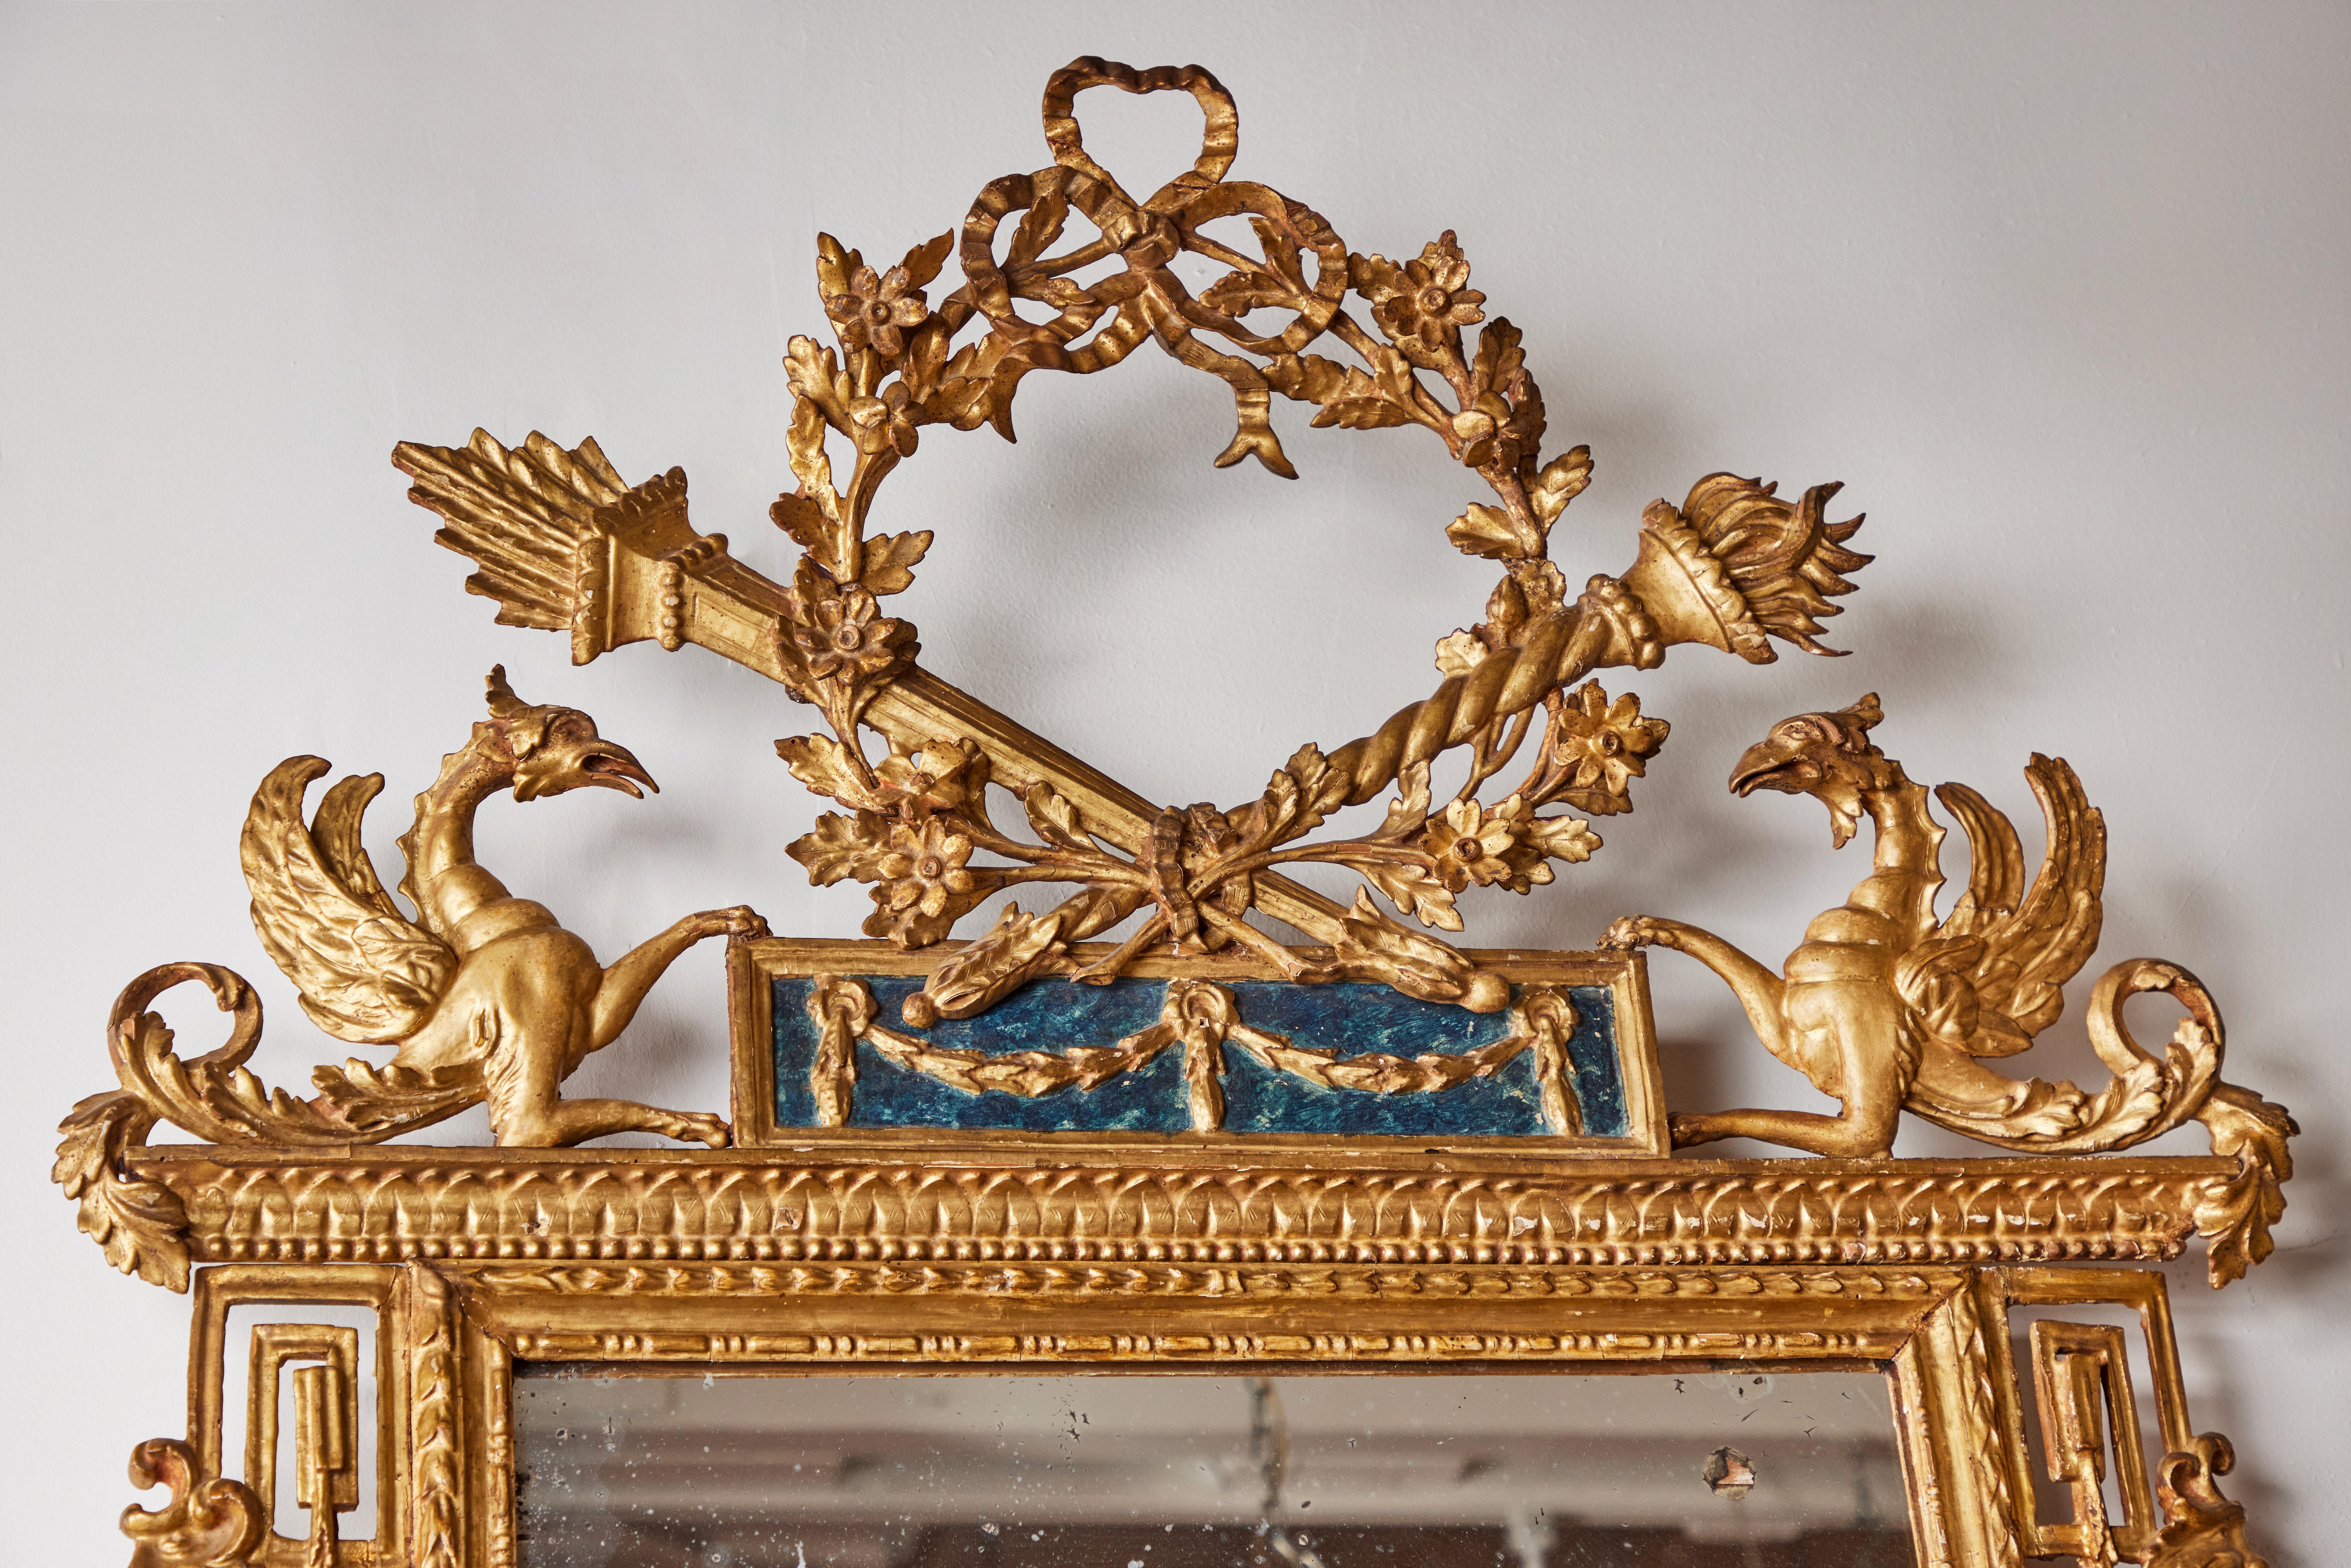 Ein Paar völlig originaler, handgeschnitzter und vergoldeter, italienischer Pfeilerspiegel, um 1800. Jede von ihnen trägt eine spektakuläre Krone, die aus einem durchbrochenen, blumengeschmückten Kranz besteht, der von einer Schleife gekrönt und von